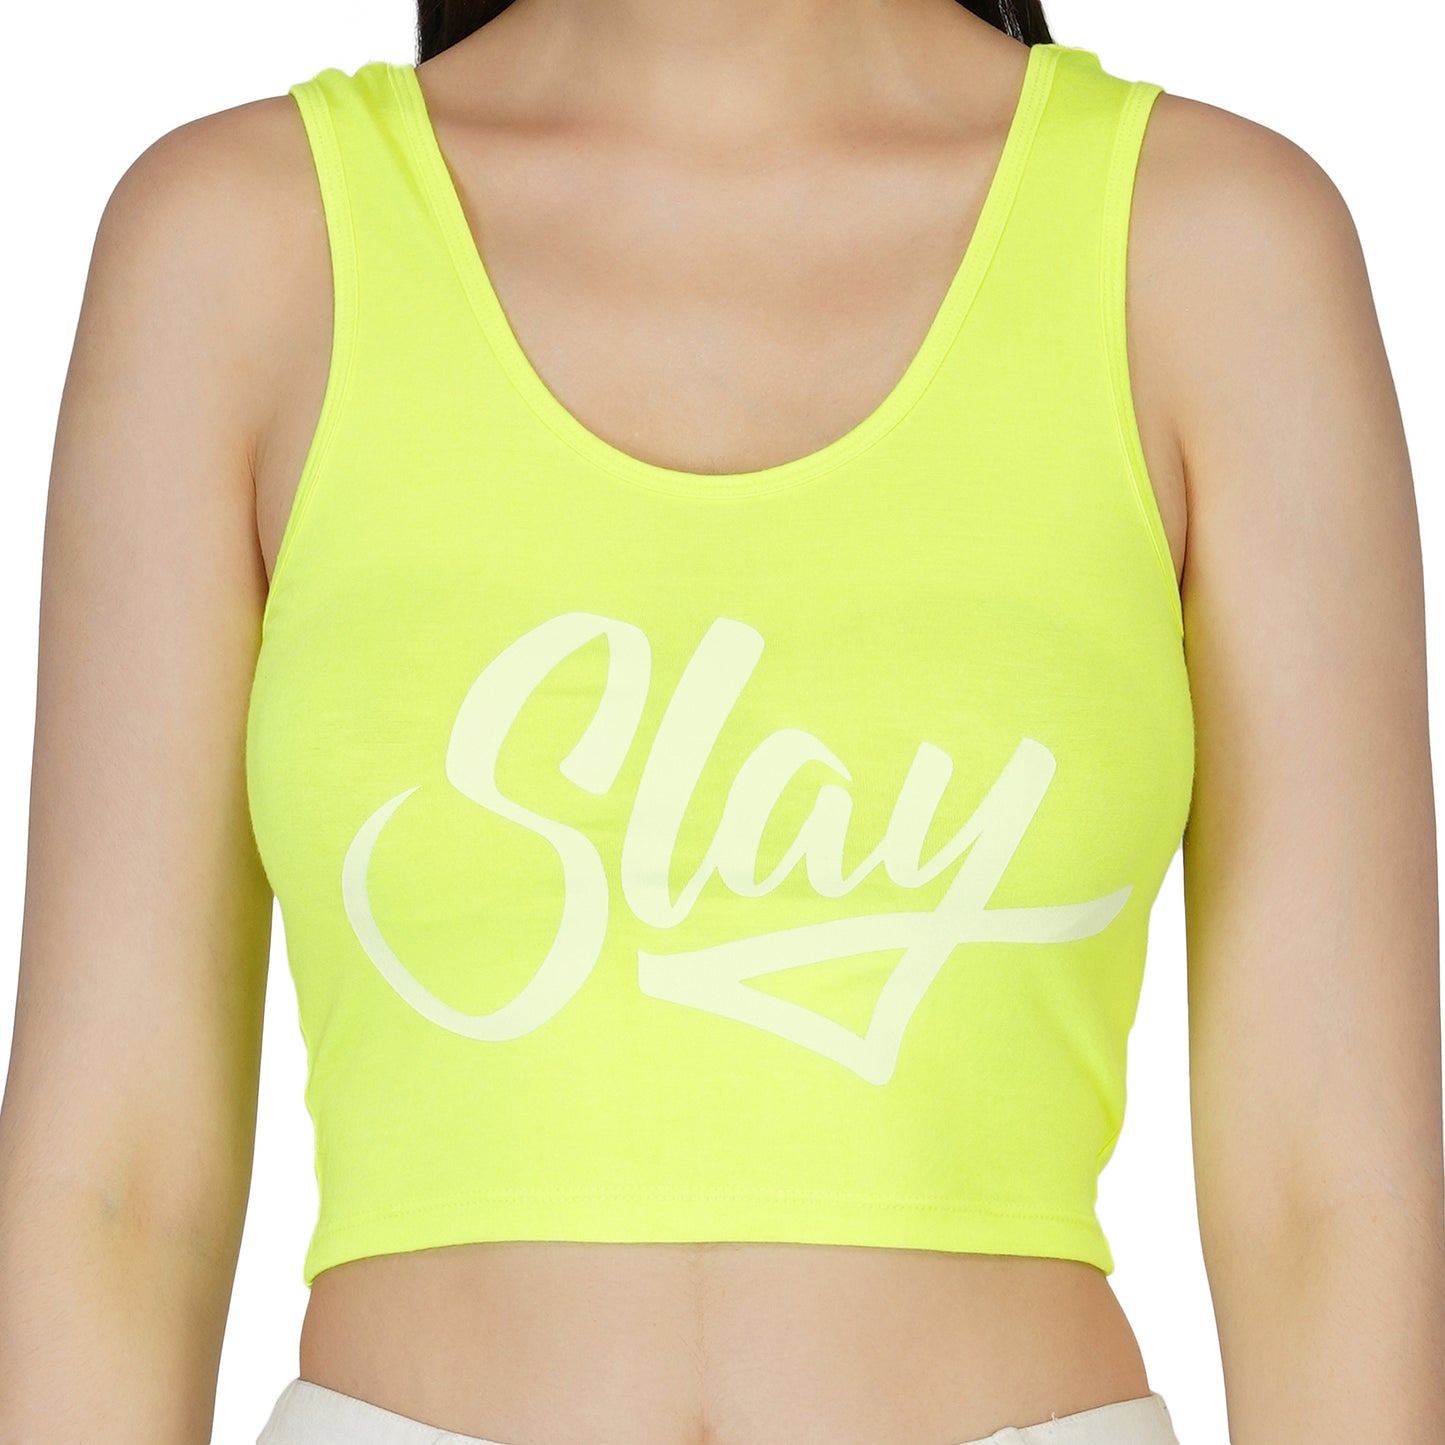 SLAY. Women's Neon Green Printed Crop Top